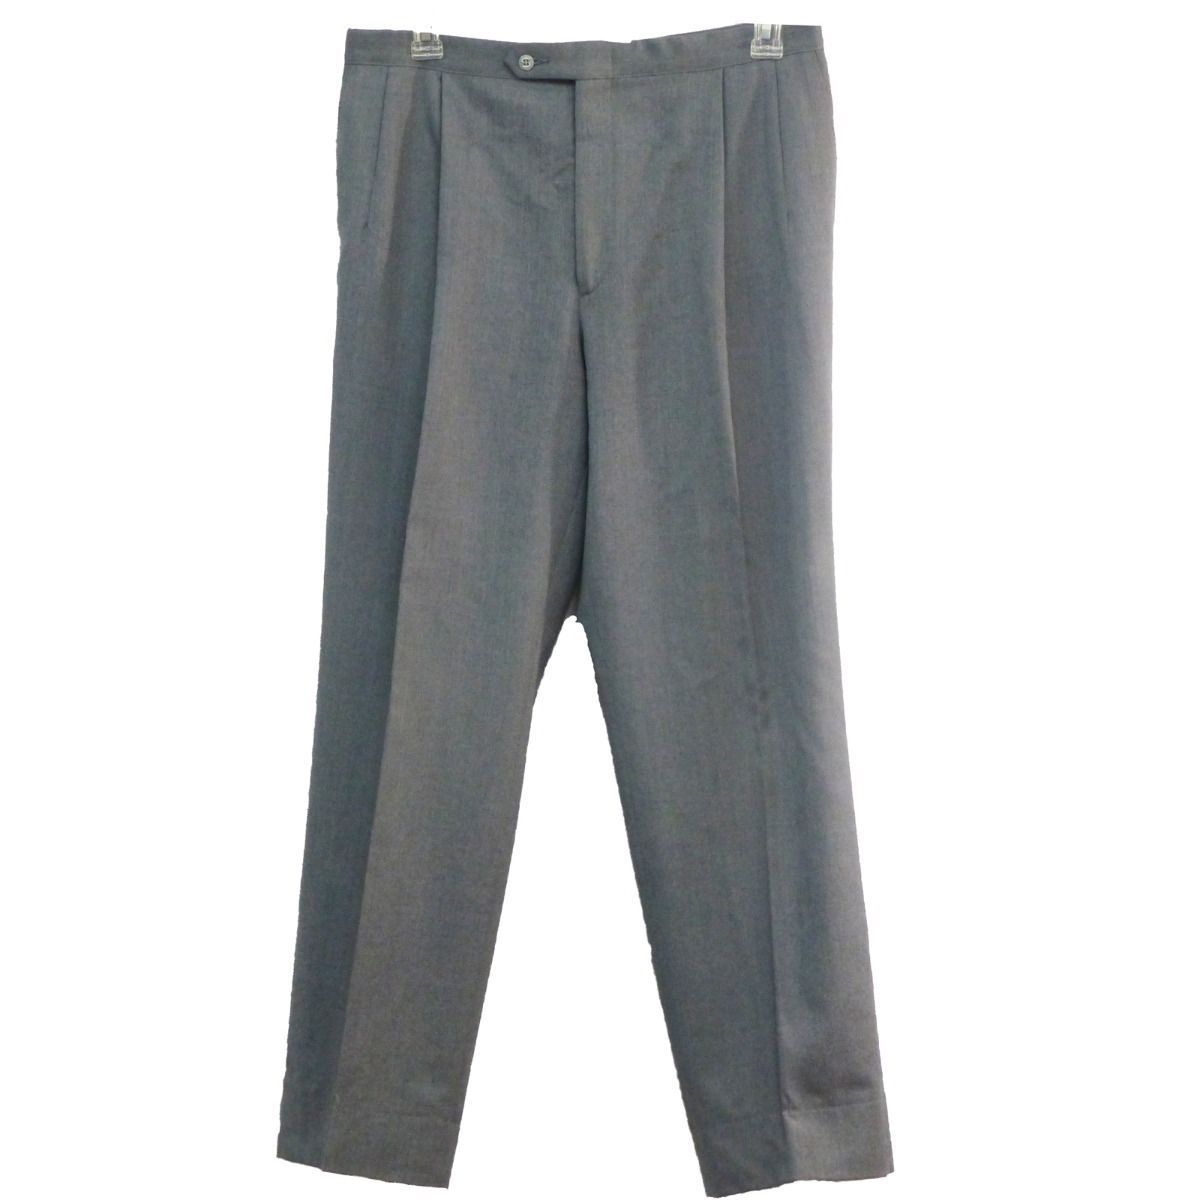 Vintage Sansabelt Jaymar-Ruby Mens Dress Pants 34